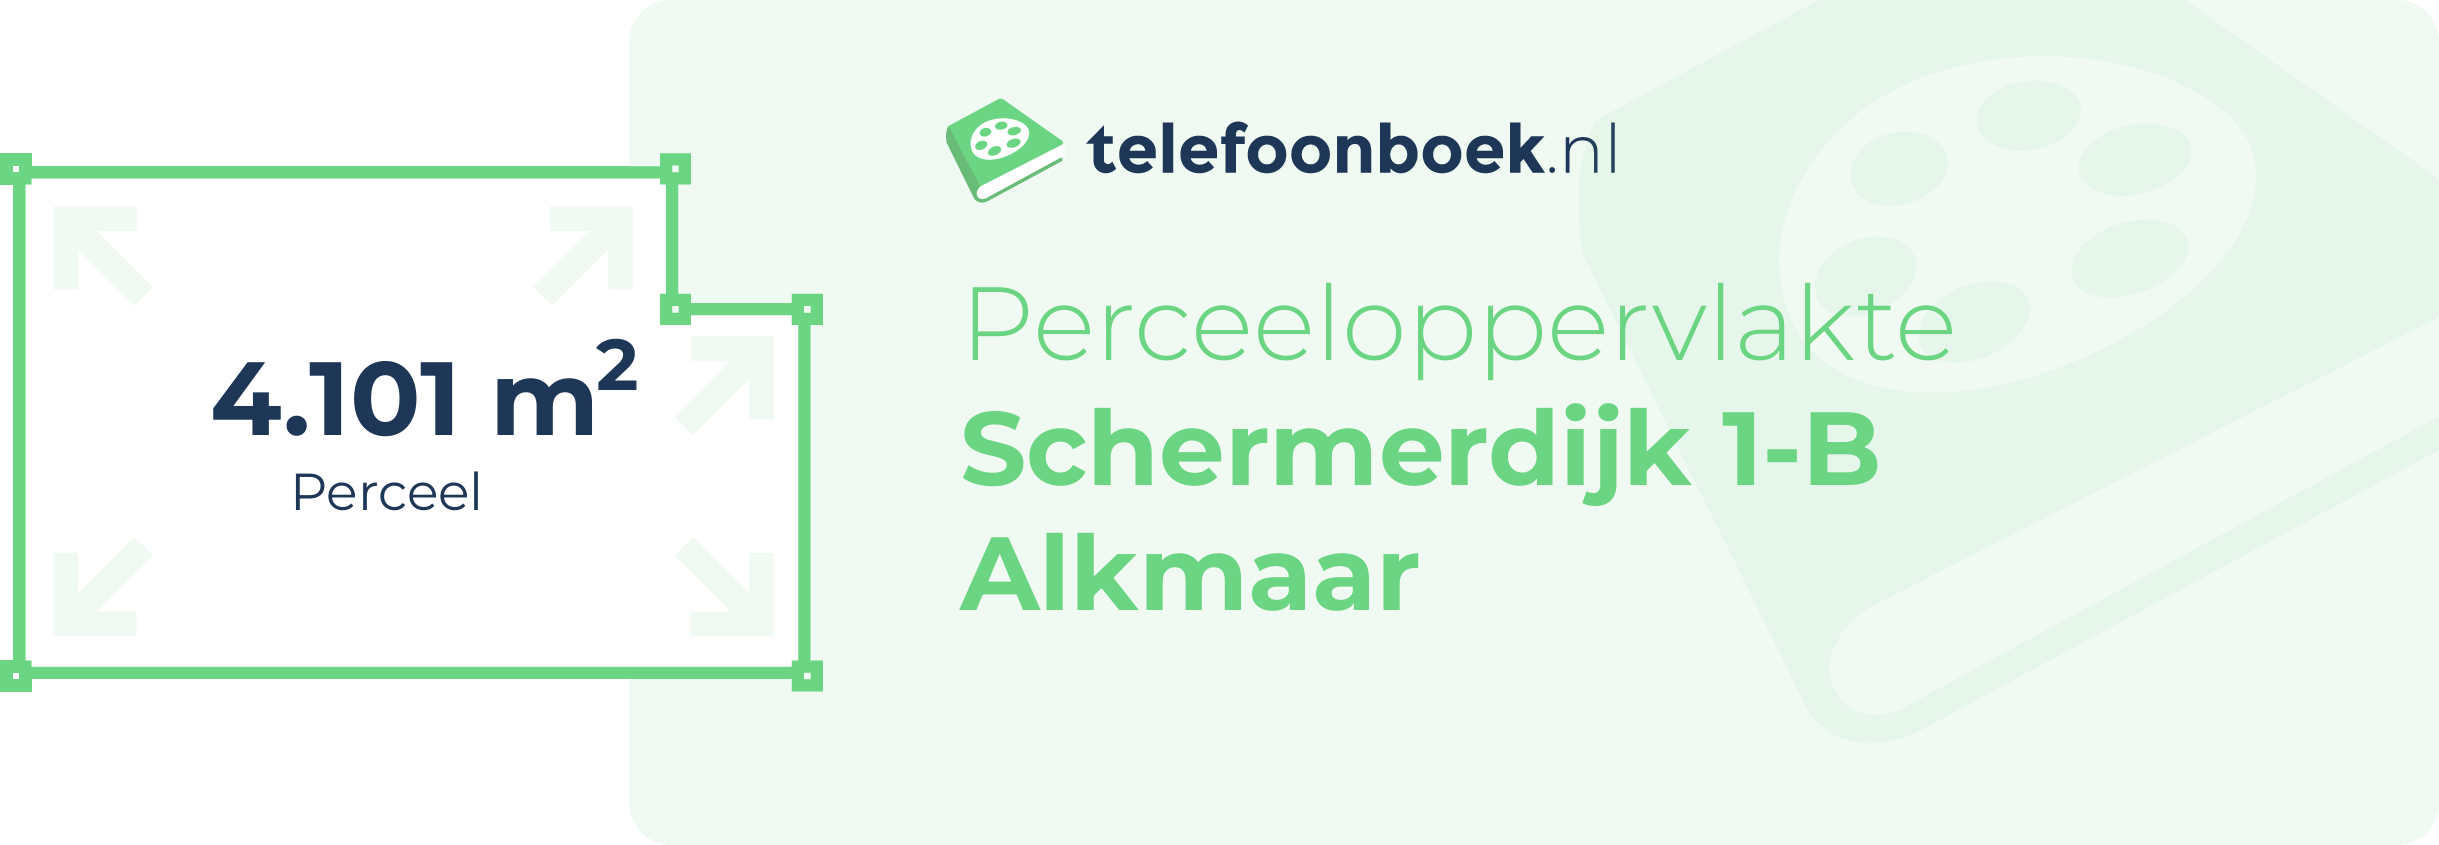 Perceeloppervlakte Schermerdijk 1-B Alkmaar